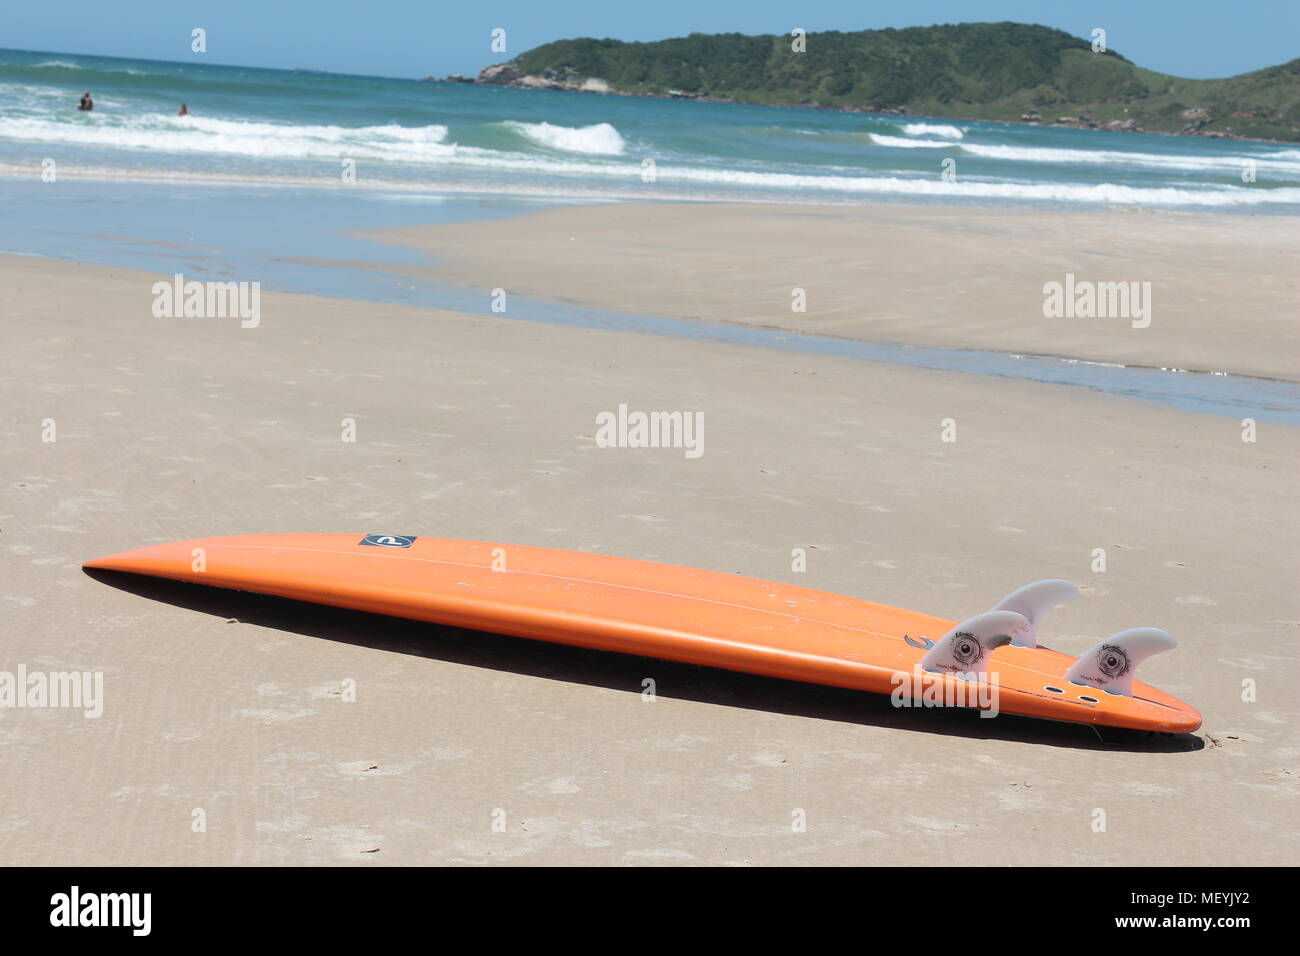 Surf board naranja tumbado en una playa con arena y el Océano Atlántico al fondo, Praia do Rosa, Brasil Foto de stock